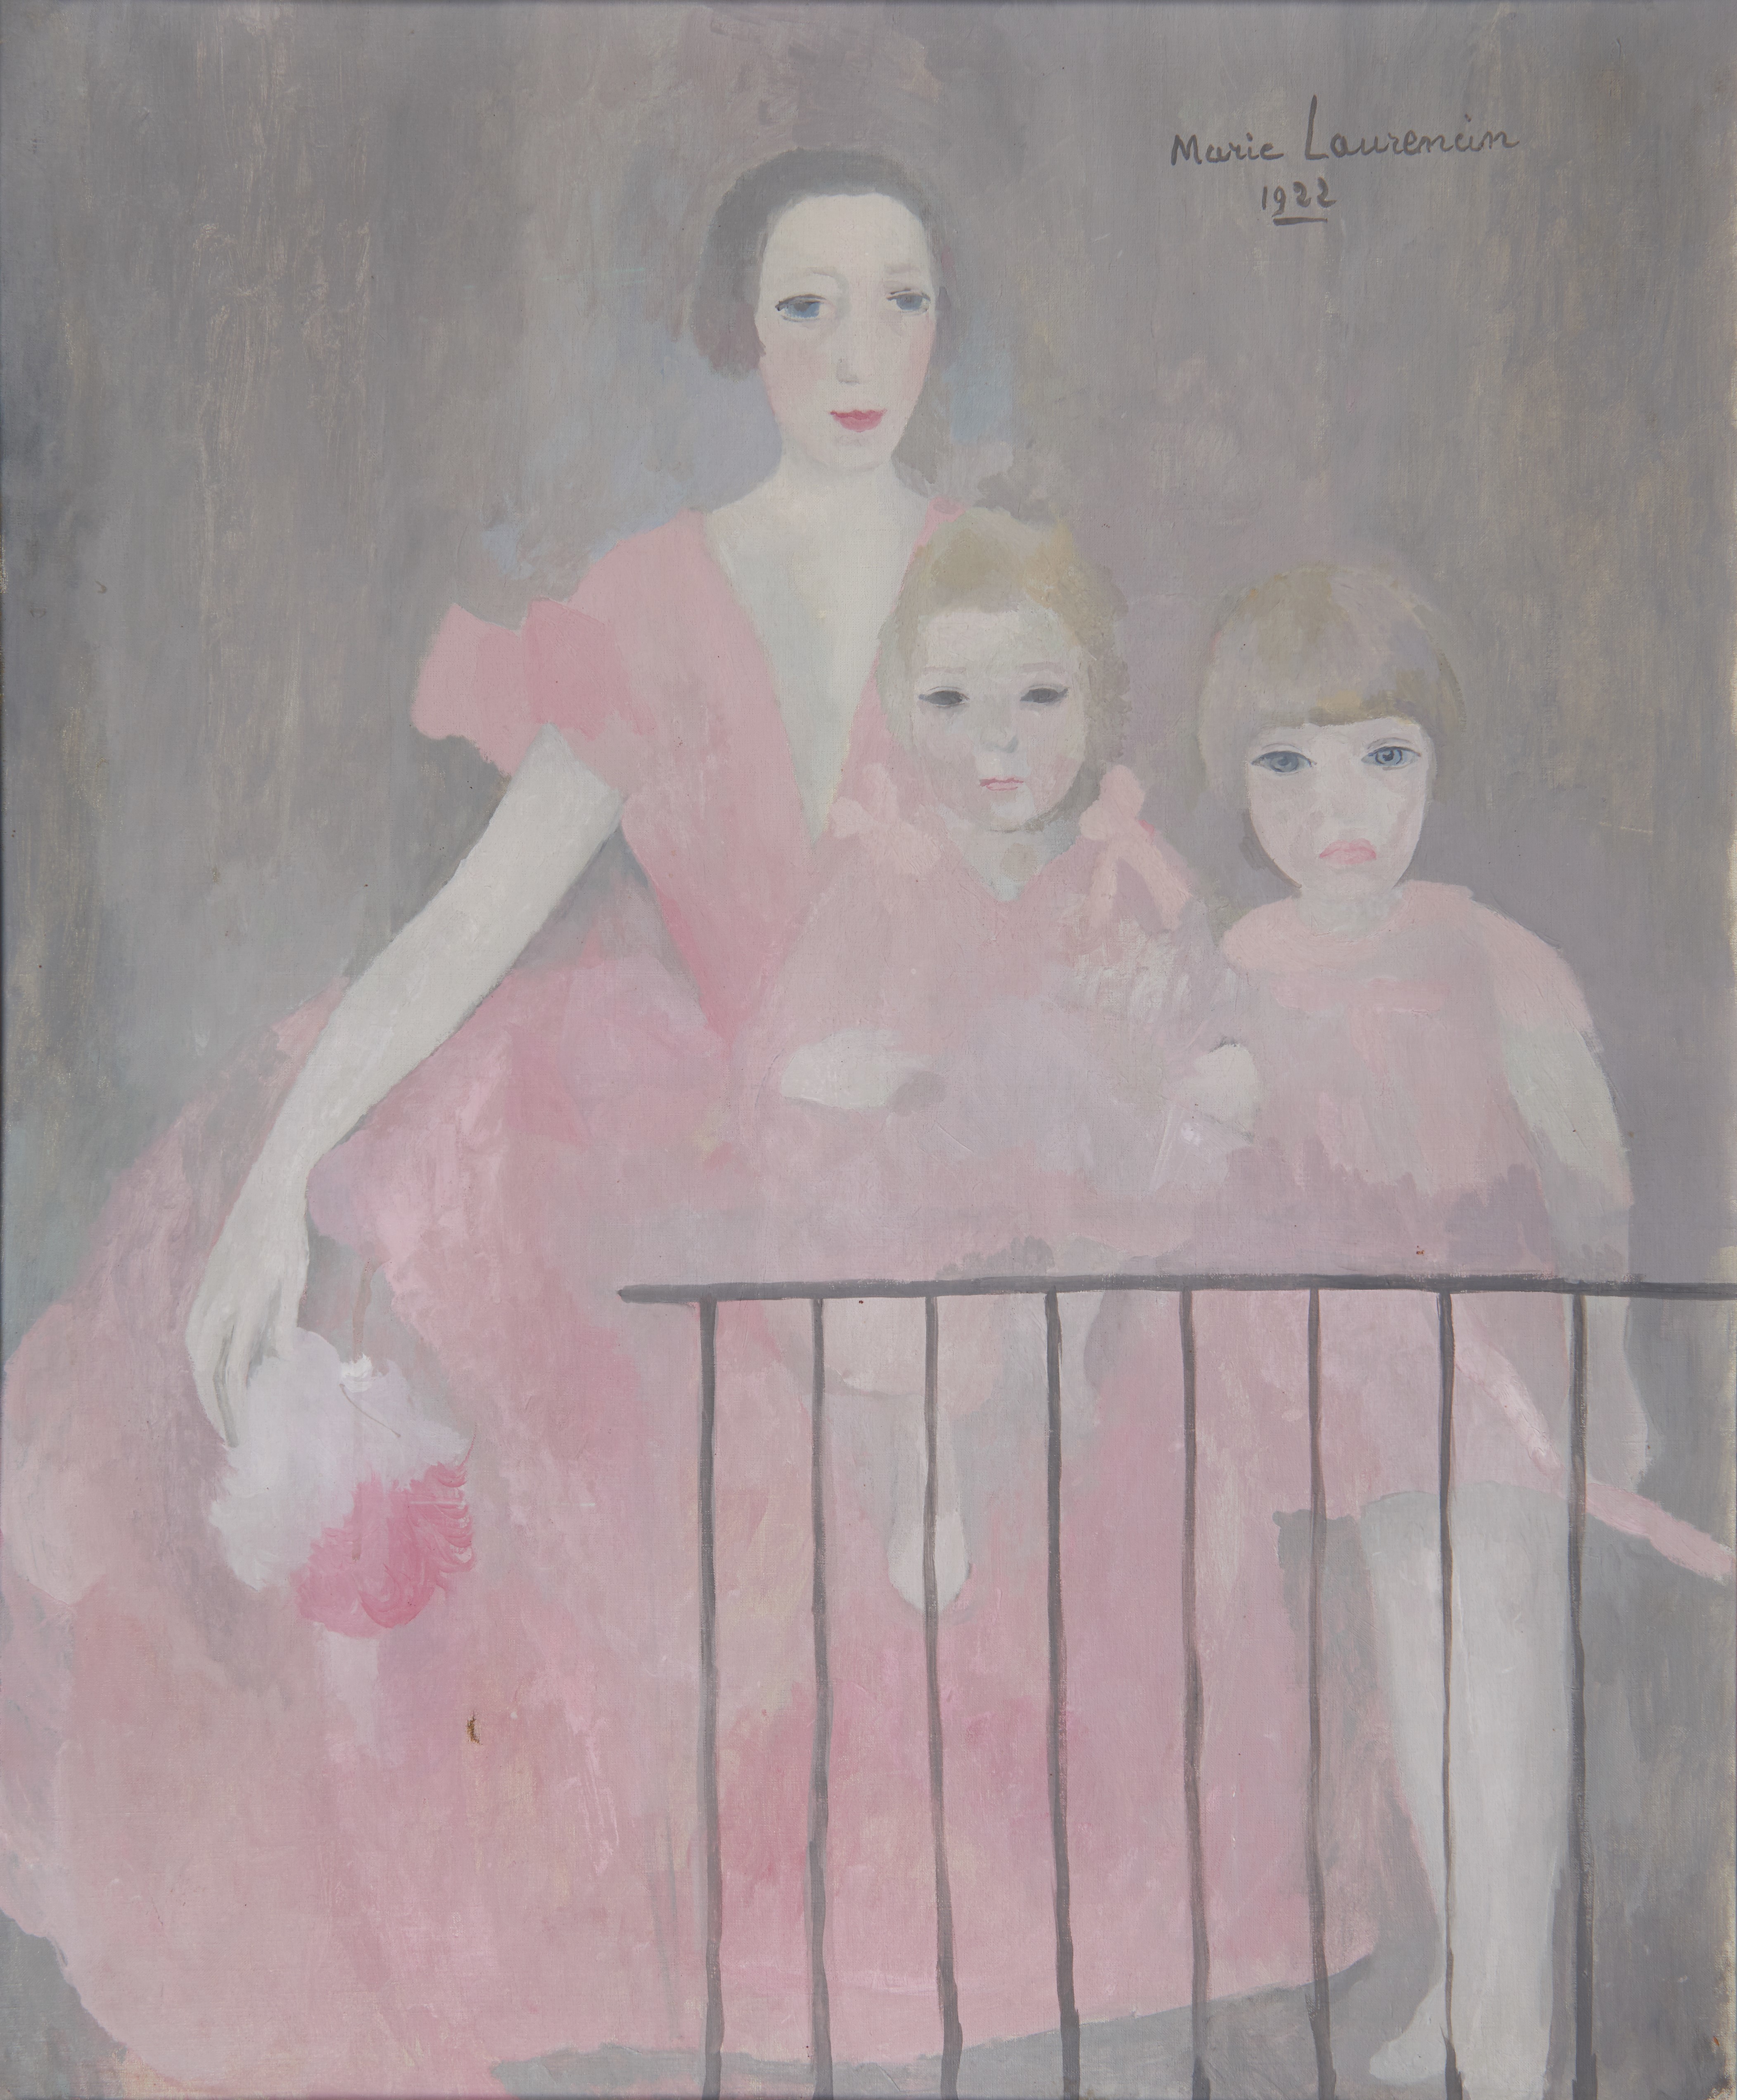 マリー・ローランサン　「ニコル・グルーと二人の娘、ブノワットとマリオン」  1922年　油彩/キャンヴァス　マリー・ローランサン美術館蔵  (c) Musée Marie Laurencin